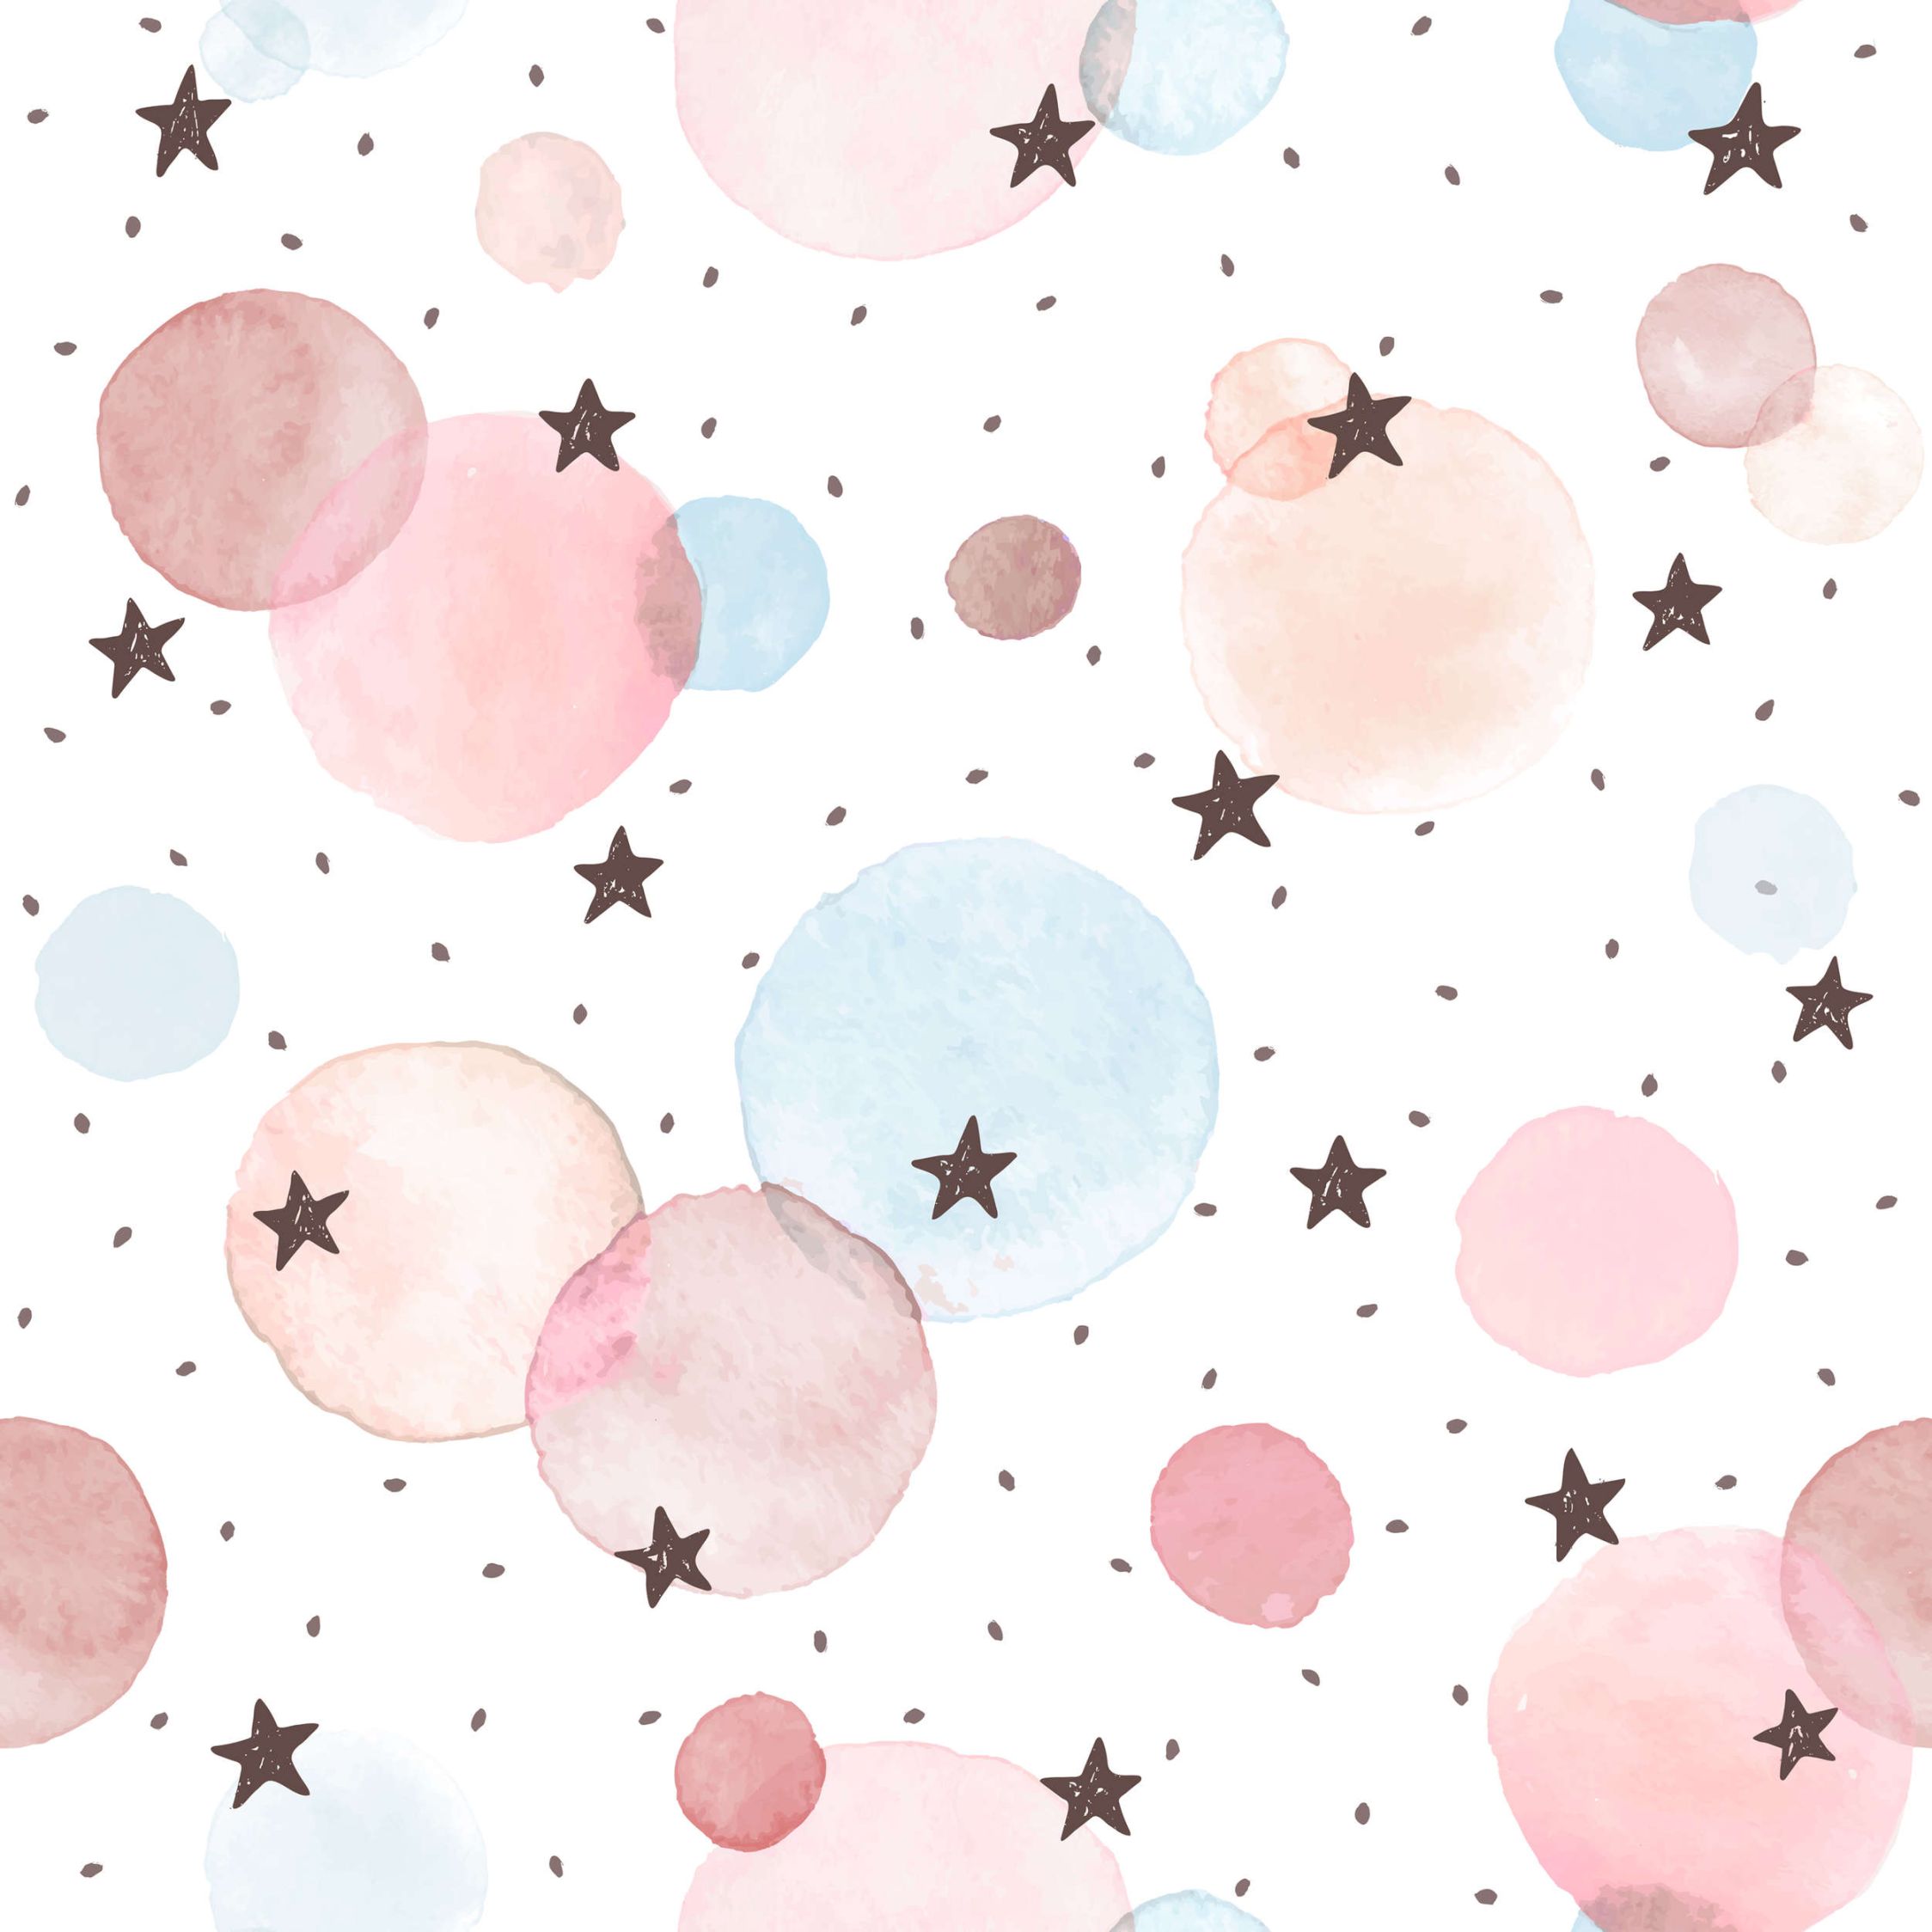             Fototapete fürs Kinderzimmer mit Sternen, Punkten und Kreisen – Glattes & leicht glänzendes Vlies
        